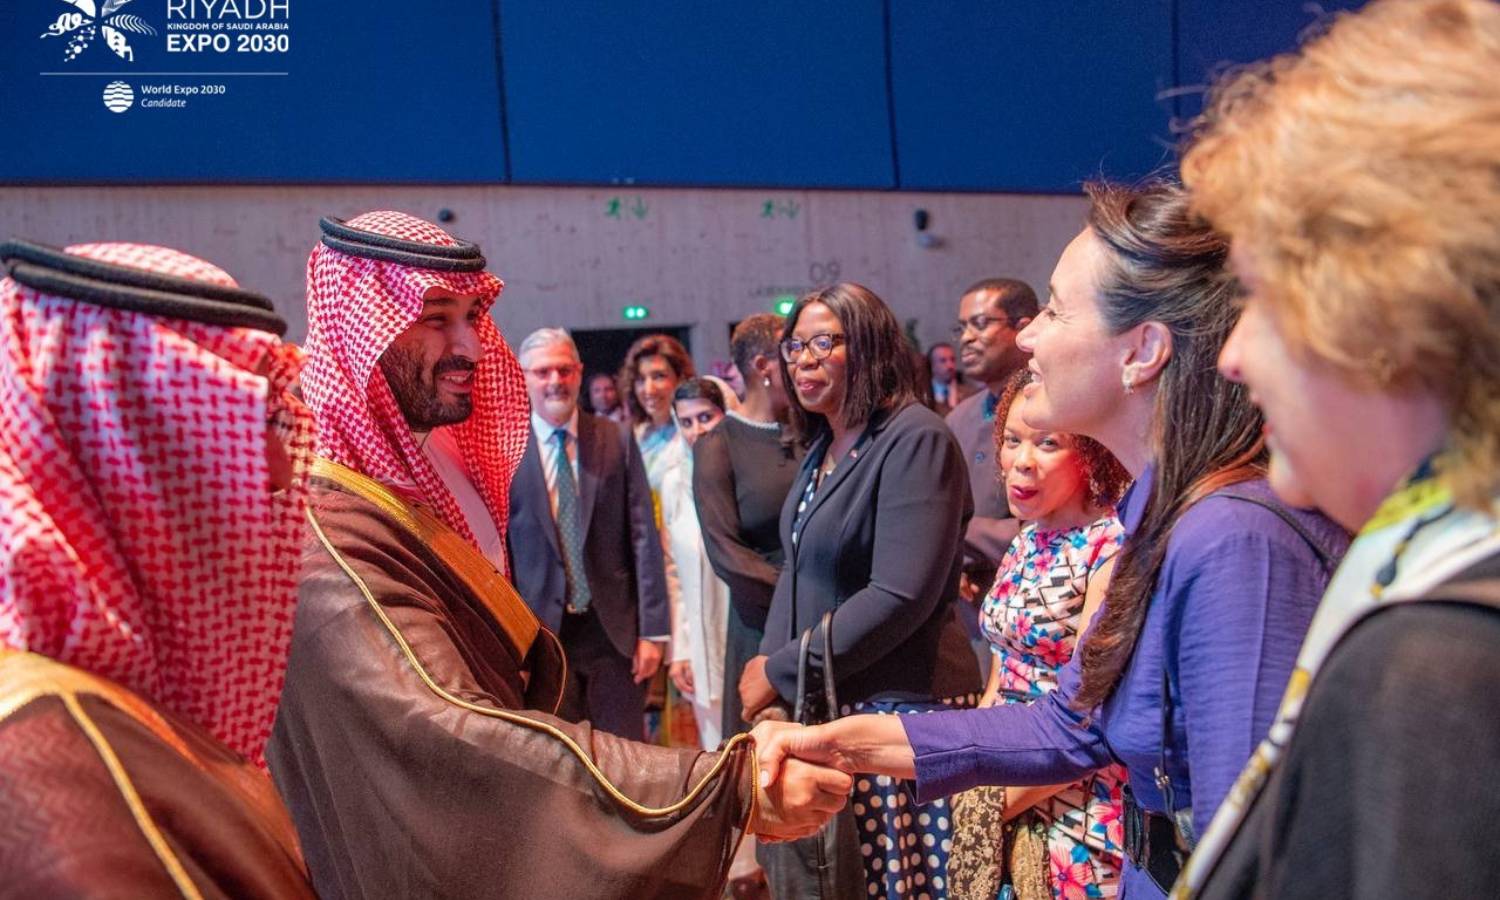 محمد بن سلمان وأعضاء المكتب الدولي للمعارض قبل جولة افتراضية لتنظيم الرياض لـ"إكسبو 2030" 19 حزيران 2023 (رياض إكسبو/ تويتر)